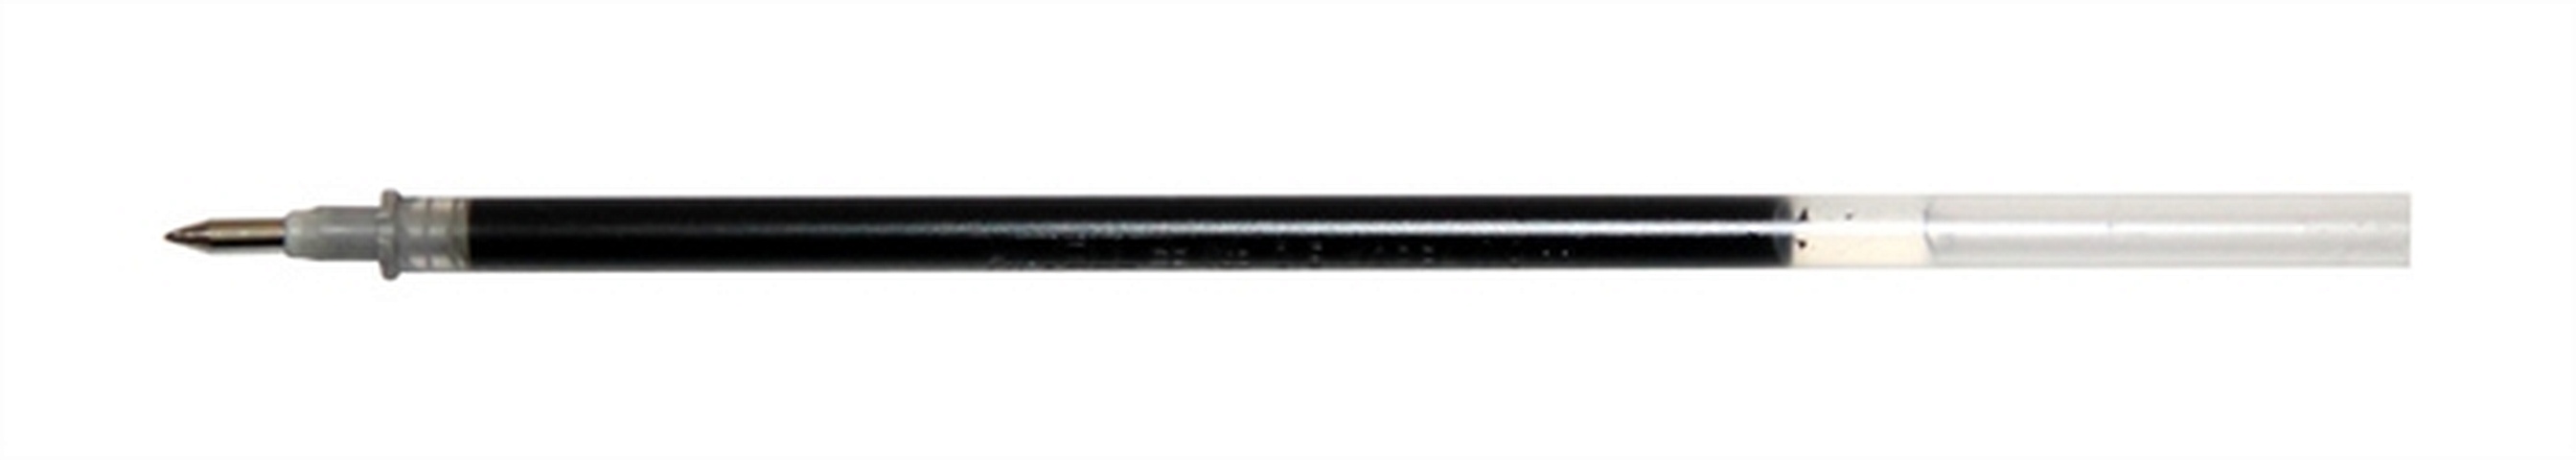 Стержень, Crown, гелевый, 0,5 мм, черный ручка роллер mingma cz 198 черн 0 5мм игольчатый стержень прозрачный корпус в к кор mgp1029 12 144 2592